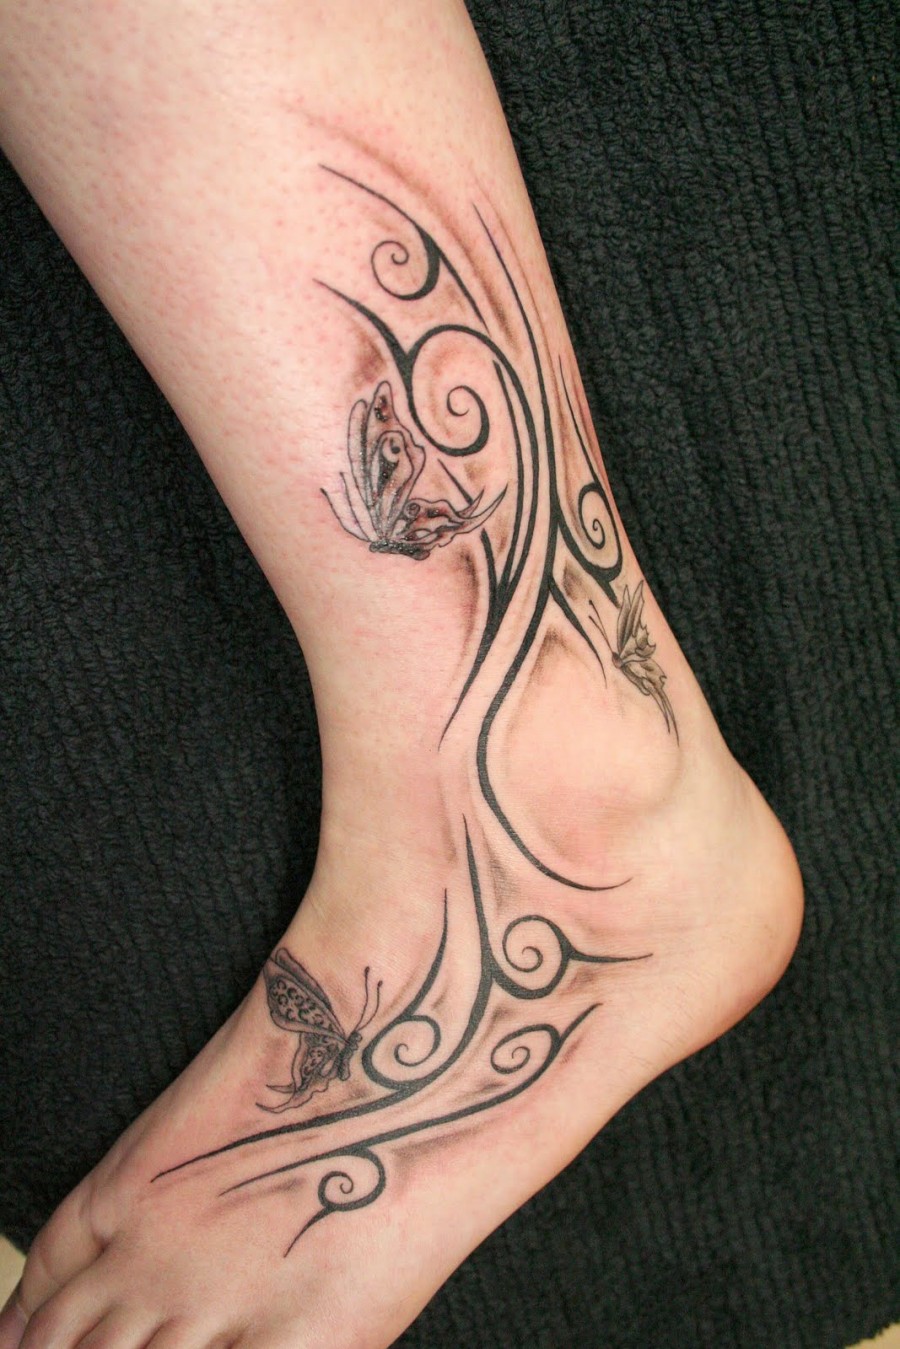 Cool Girl  Tribal  Tattoo  Design  TattooMagz  Tattoo  